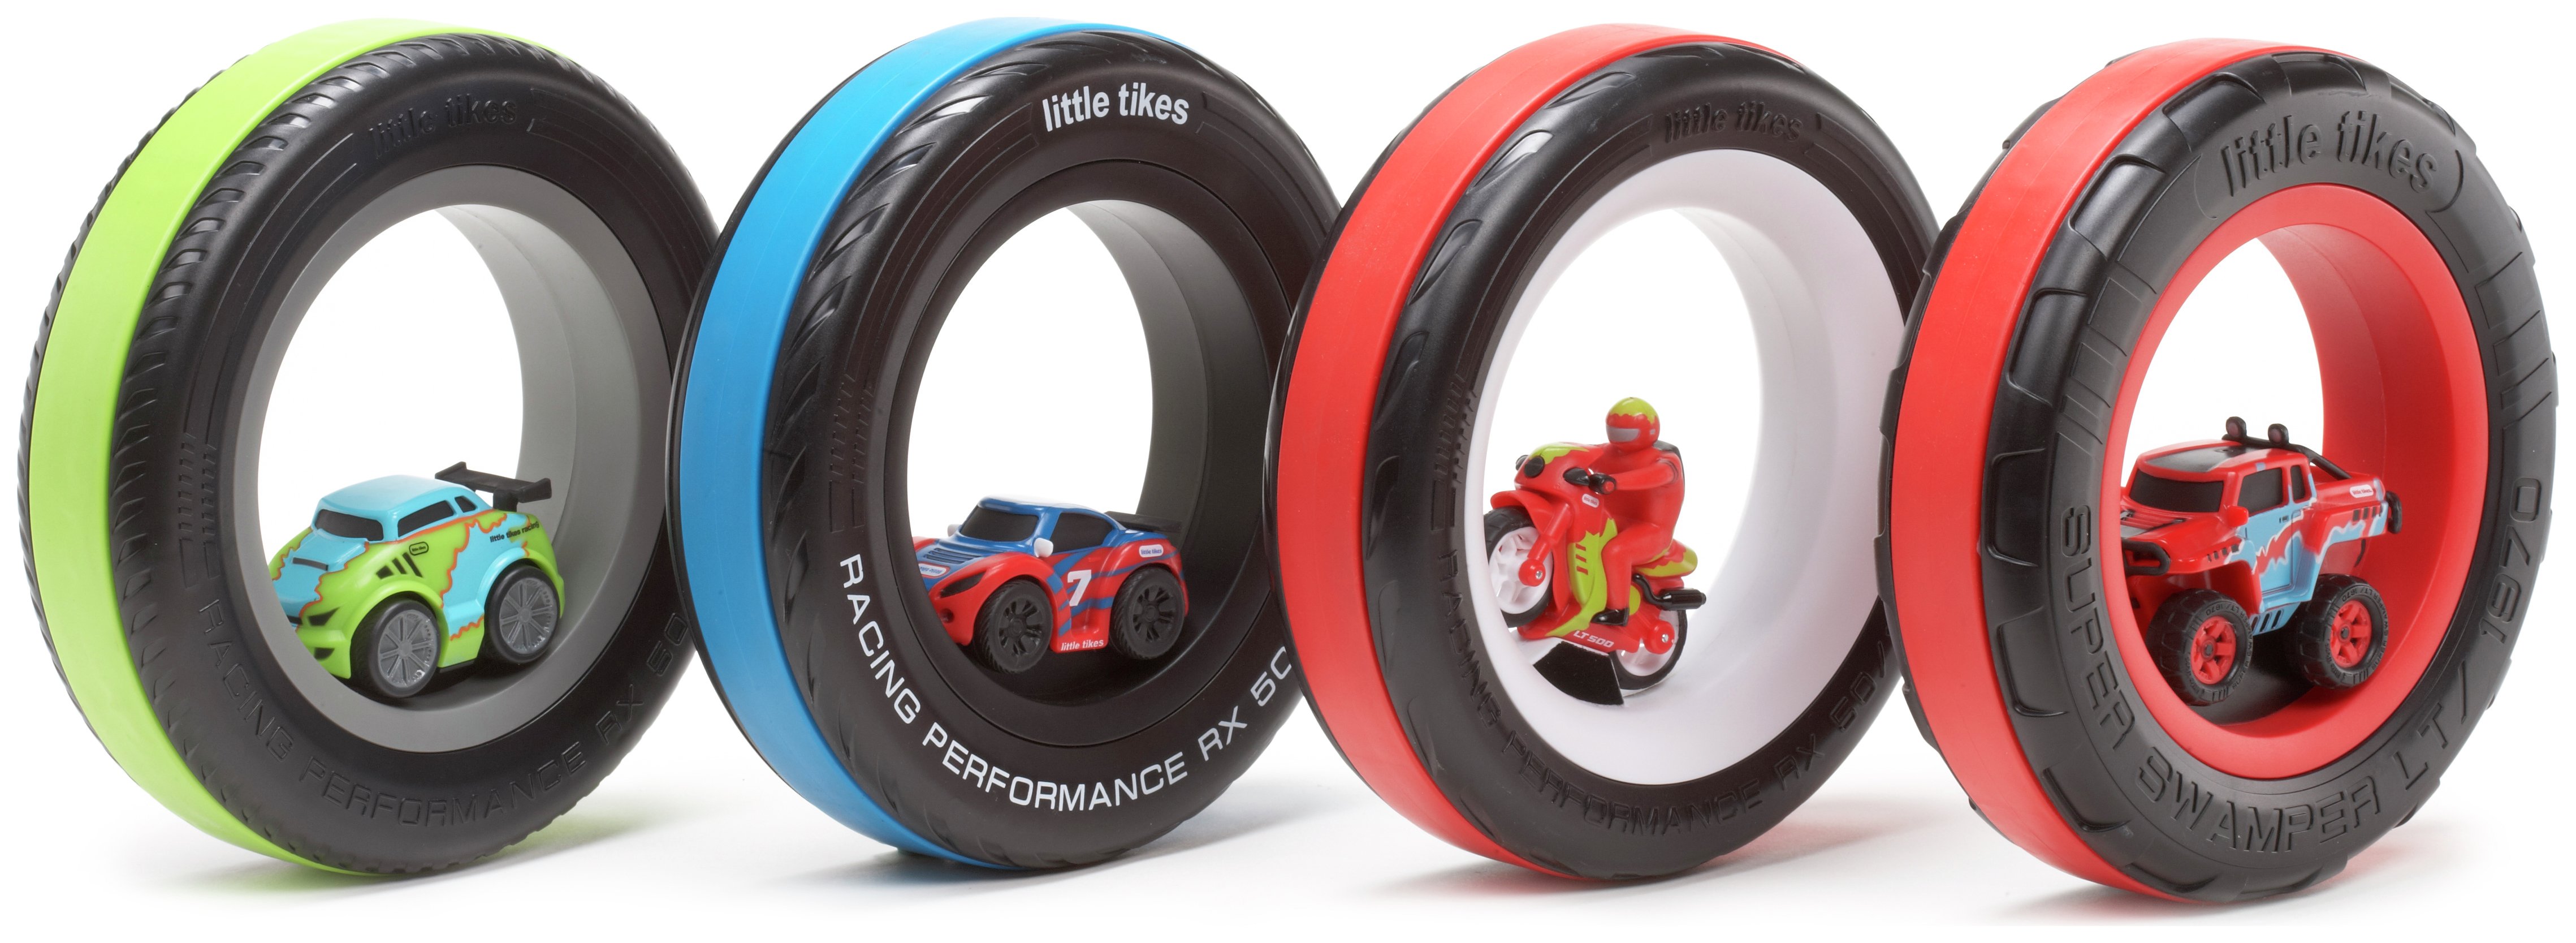 little tikes tyre racer argos